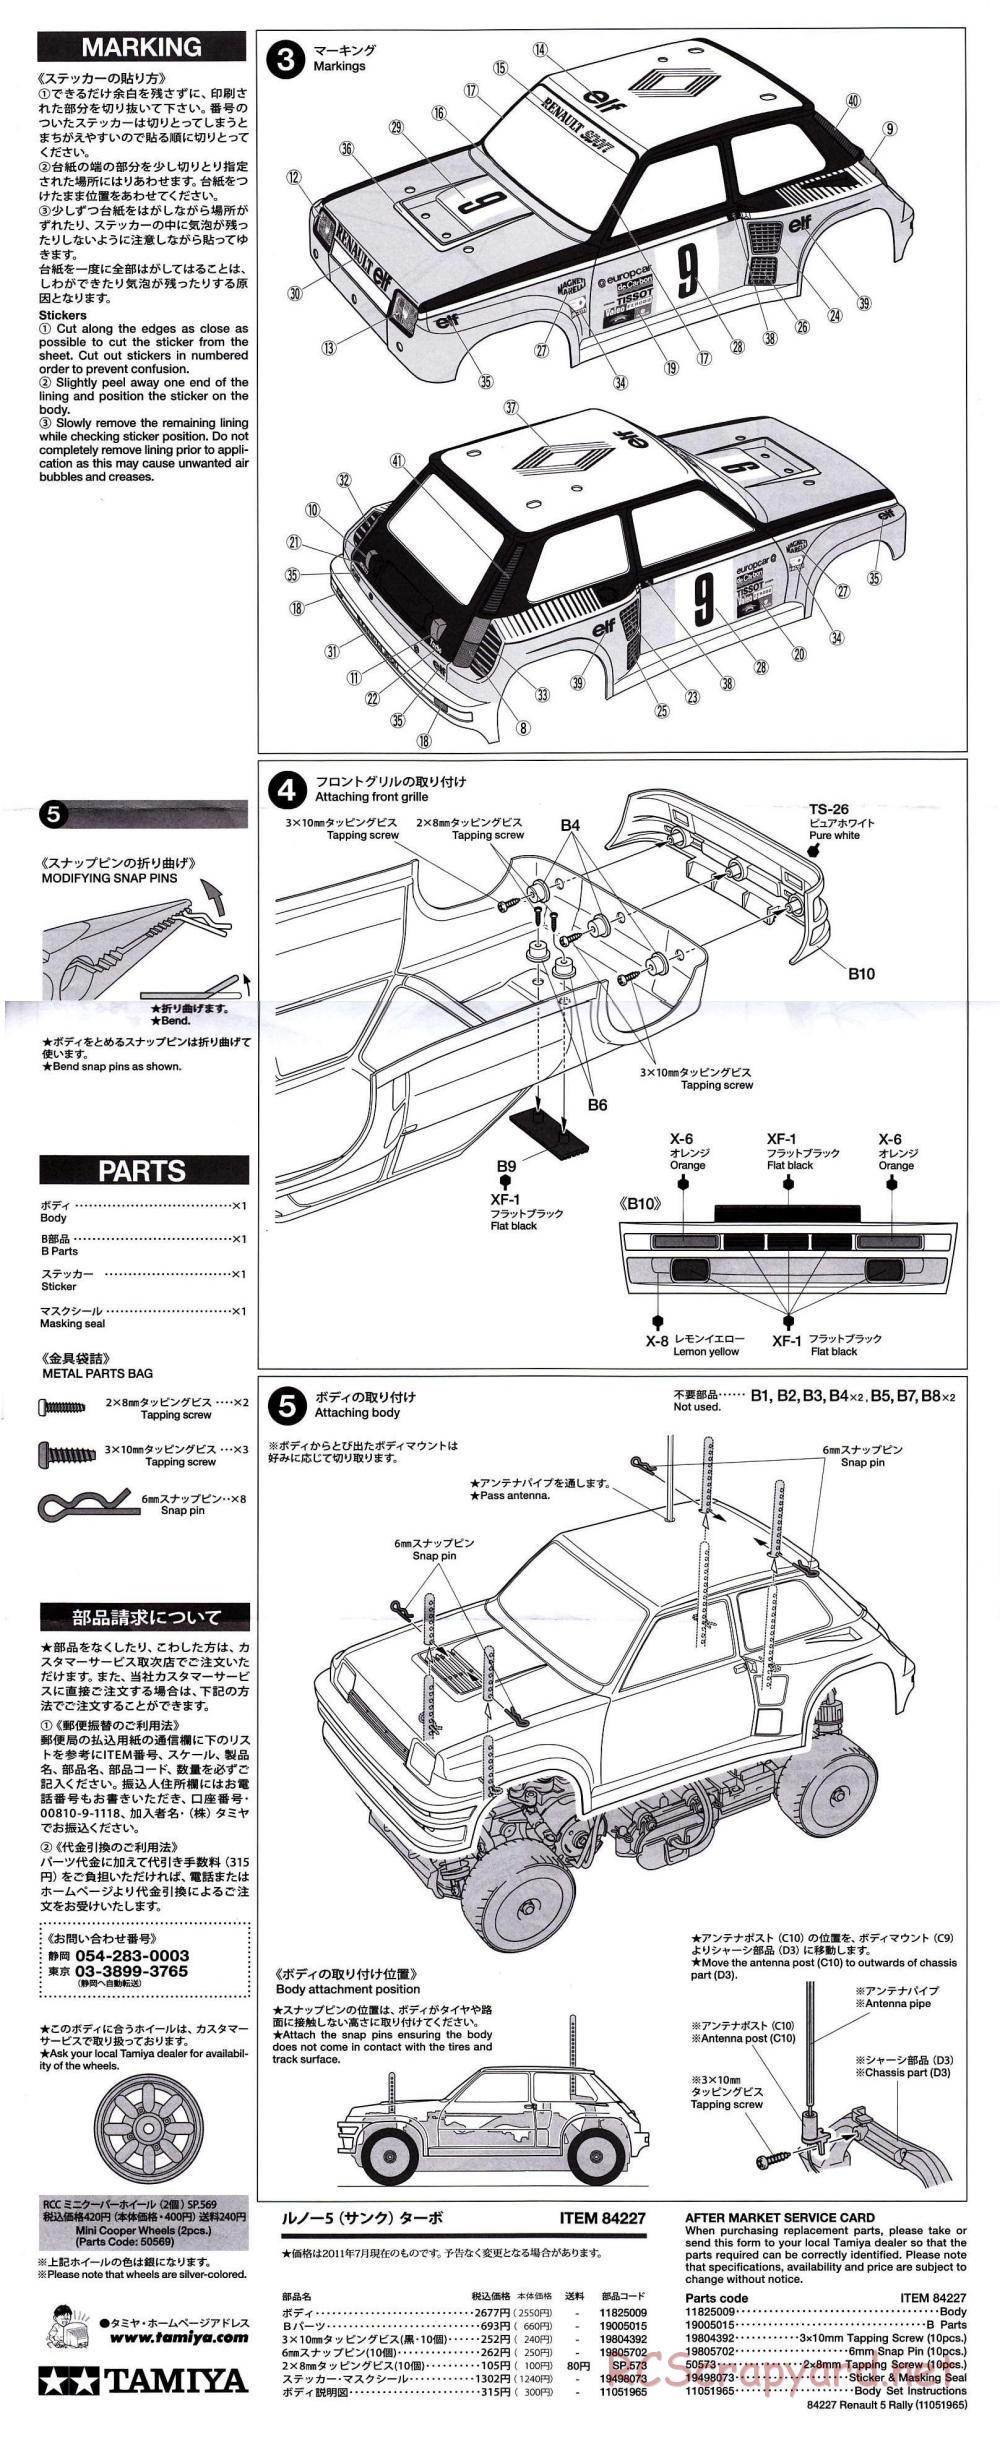 Tamiya - Renault 5 Turbo Rally - M-05Ra Chassis - Body Manual - Page 2